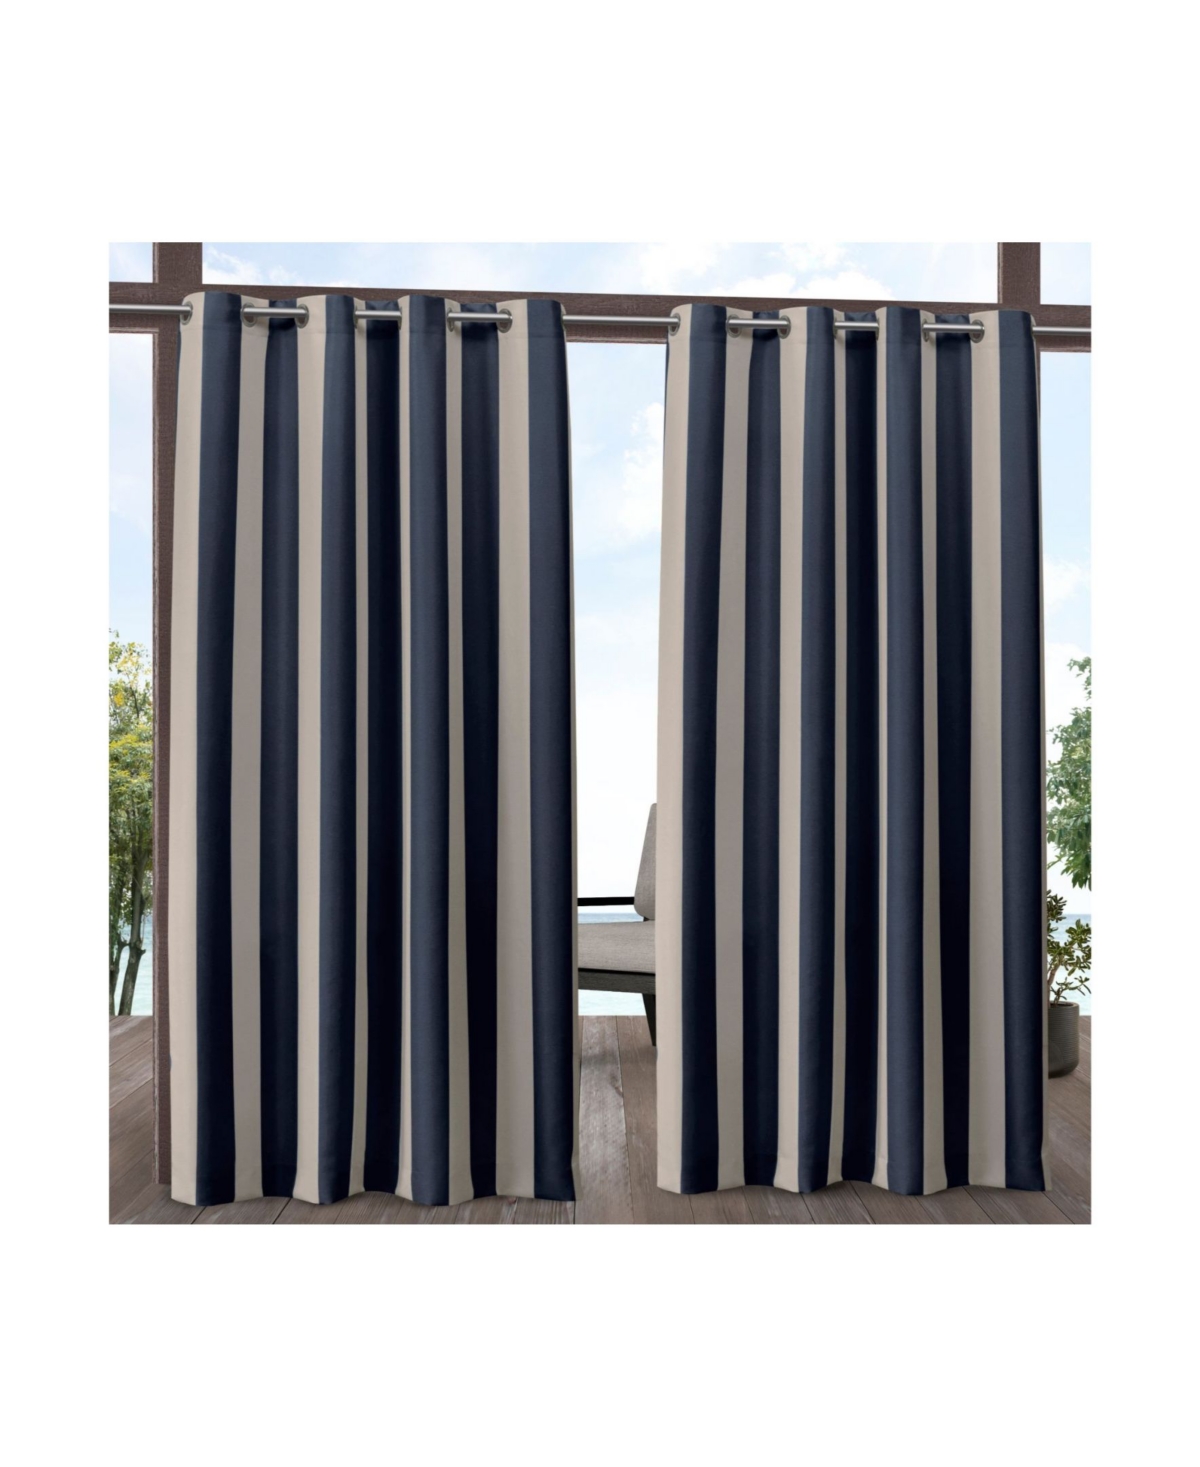 Canopy Stripe Indoor/Outdoor Grommet Top Curtain Panel Pair, 54" x 108" - Navy